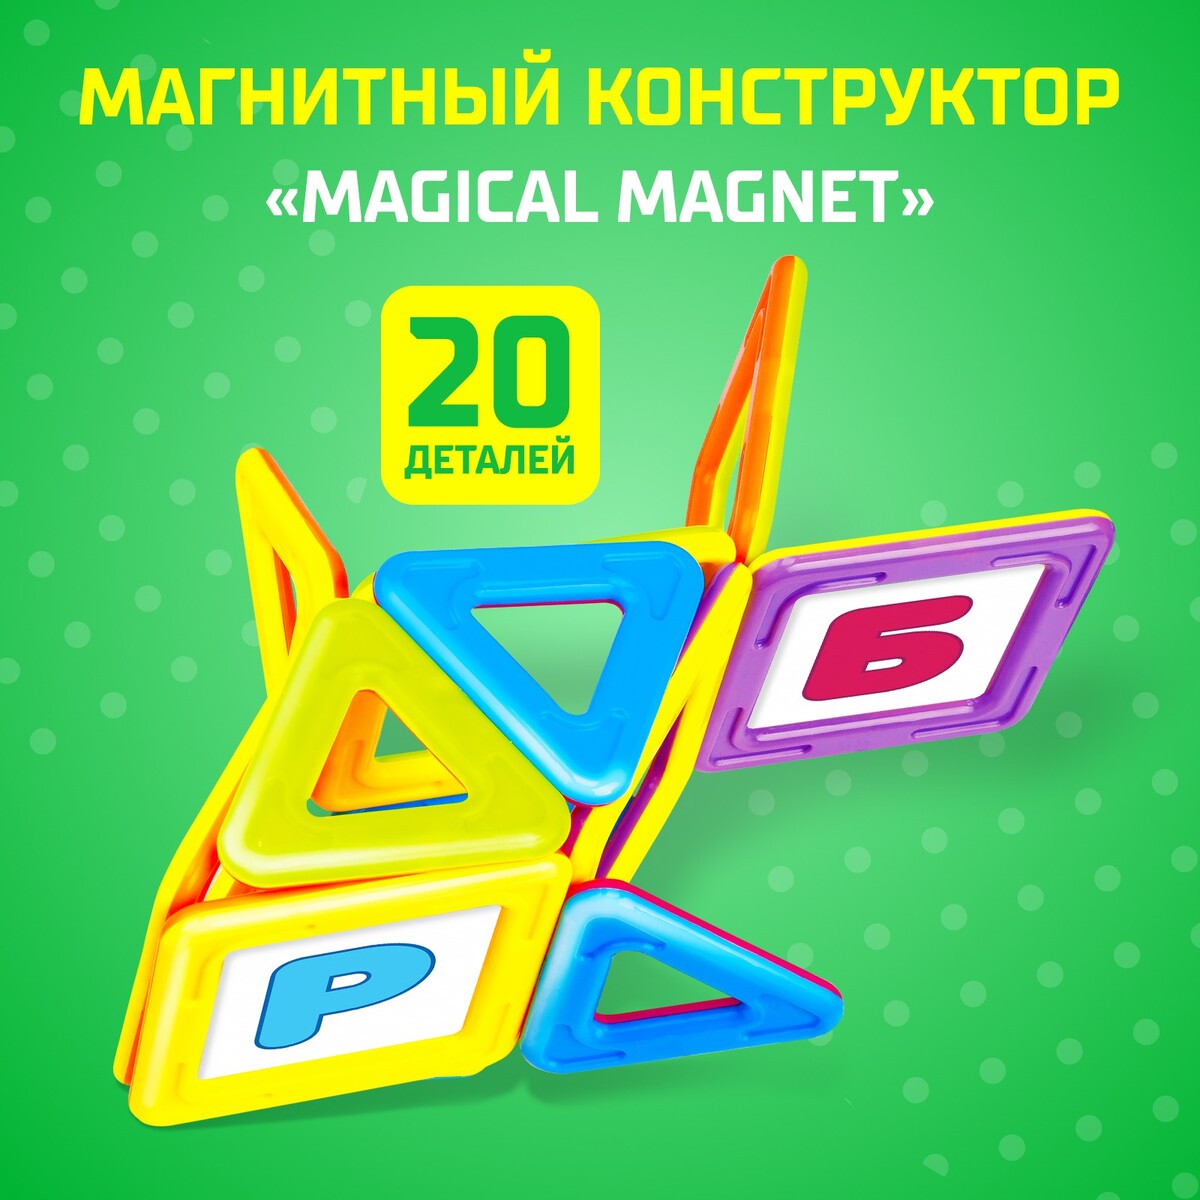 Магнитный конструктор magical magnet, 20 деталей, детали матовые магнитный конструктор magical magnet 22 детали детали матовые